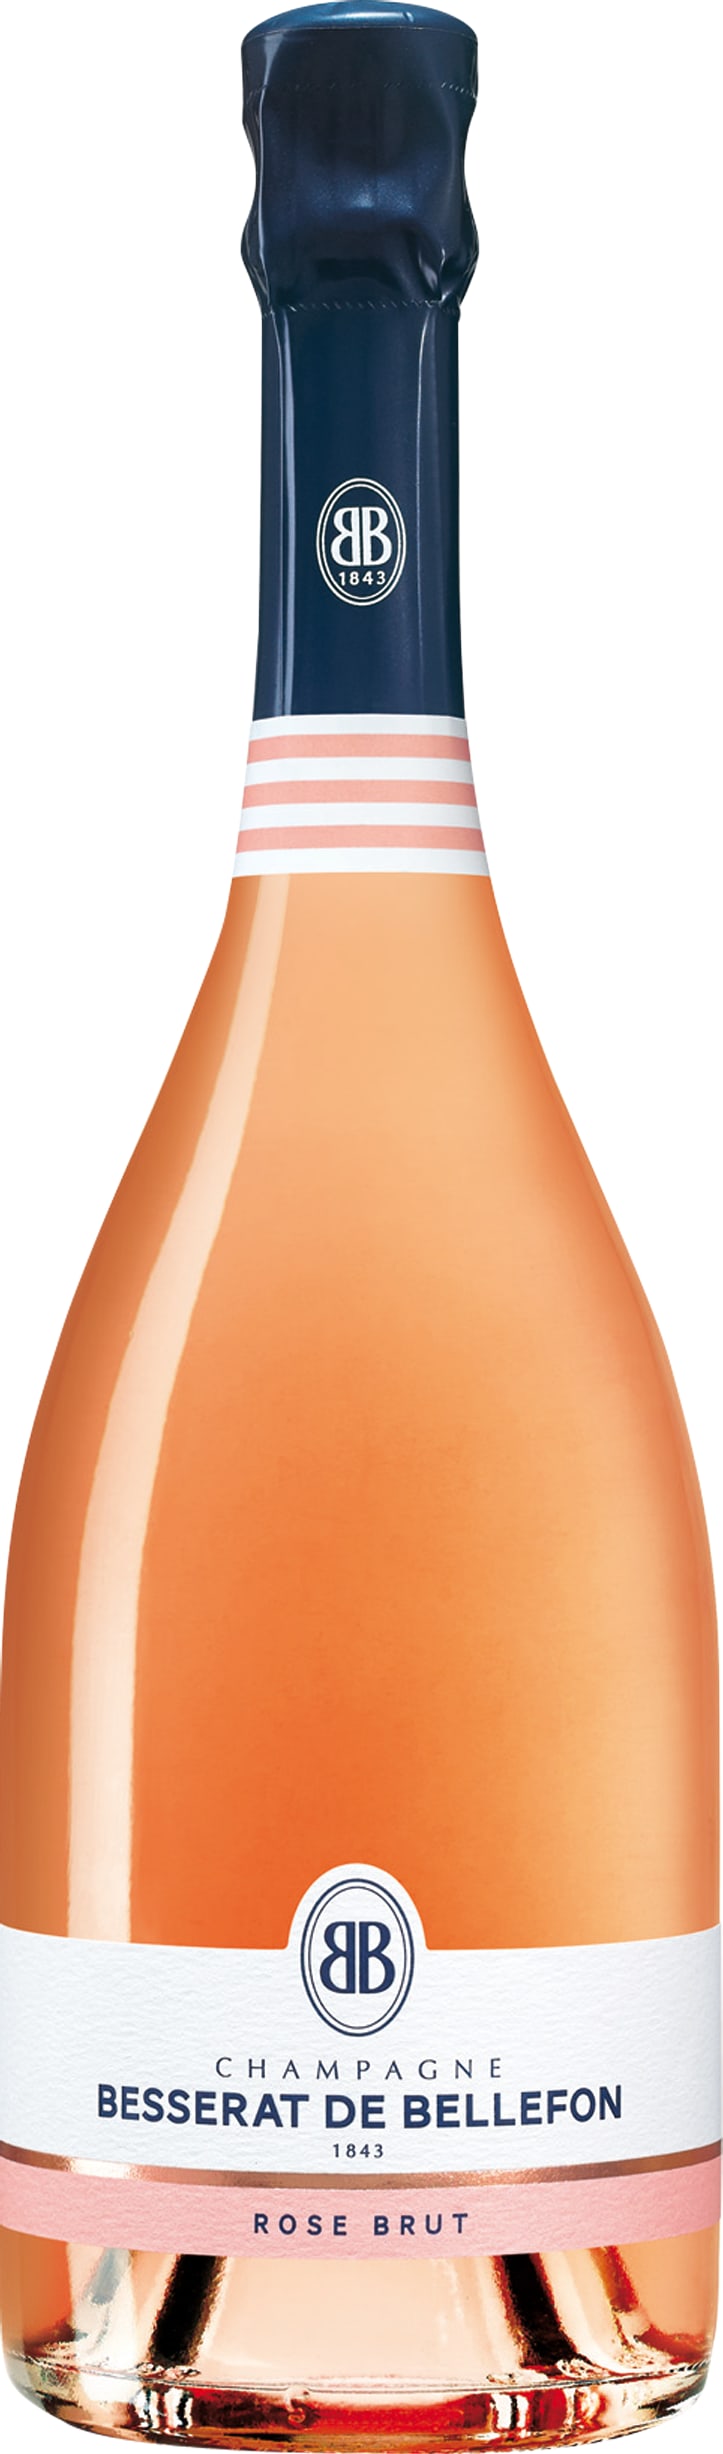 Champagne Besserat De Bellefon Rose Brut NV 75cl NV - Buy Besserat de Bellefon Wines from GREAT WINES DIRECT wine shop